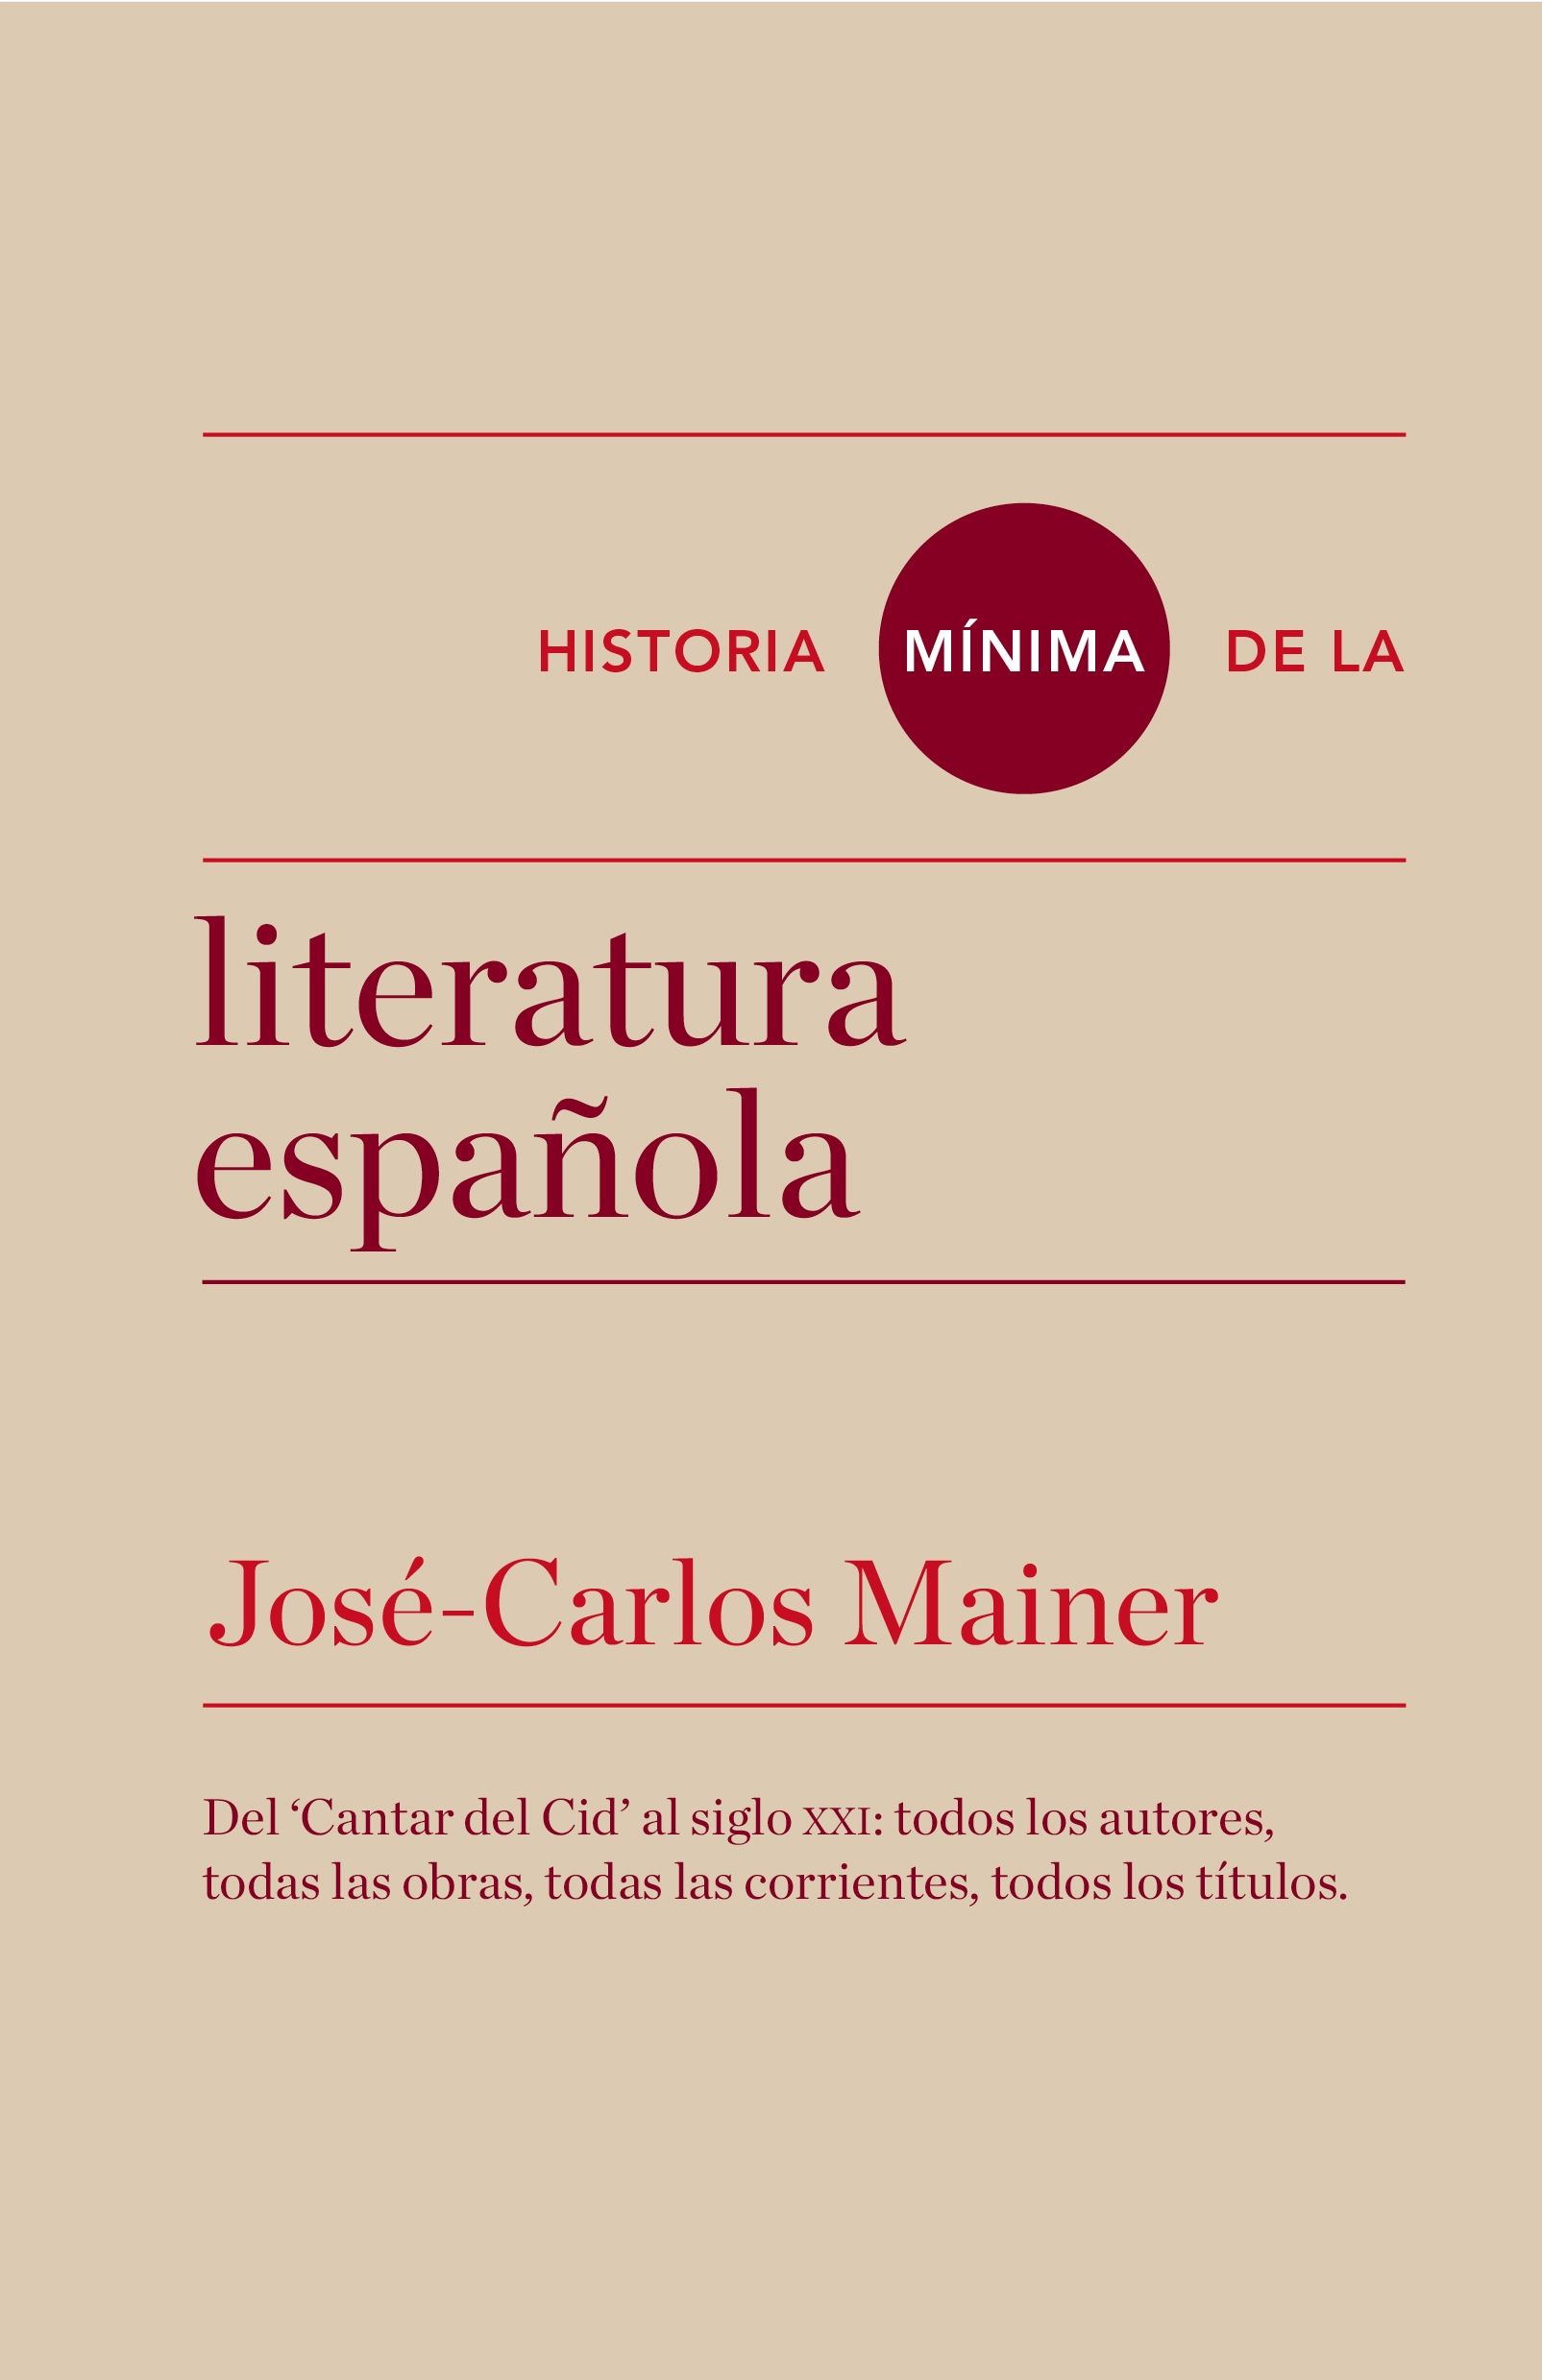 HISTORIA MÍNIMA DE LA LITERATURA ESPAÑOLA. DEL "CANTAR DE MIO CID" AL SIGLO XXI: TODOS LOS AUTORES, TODAS LAS OBRAS, TODAS